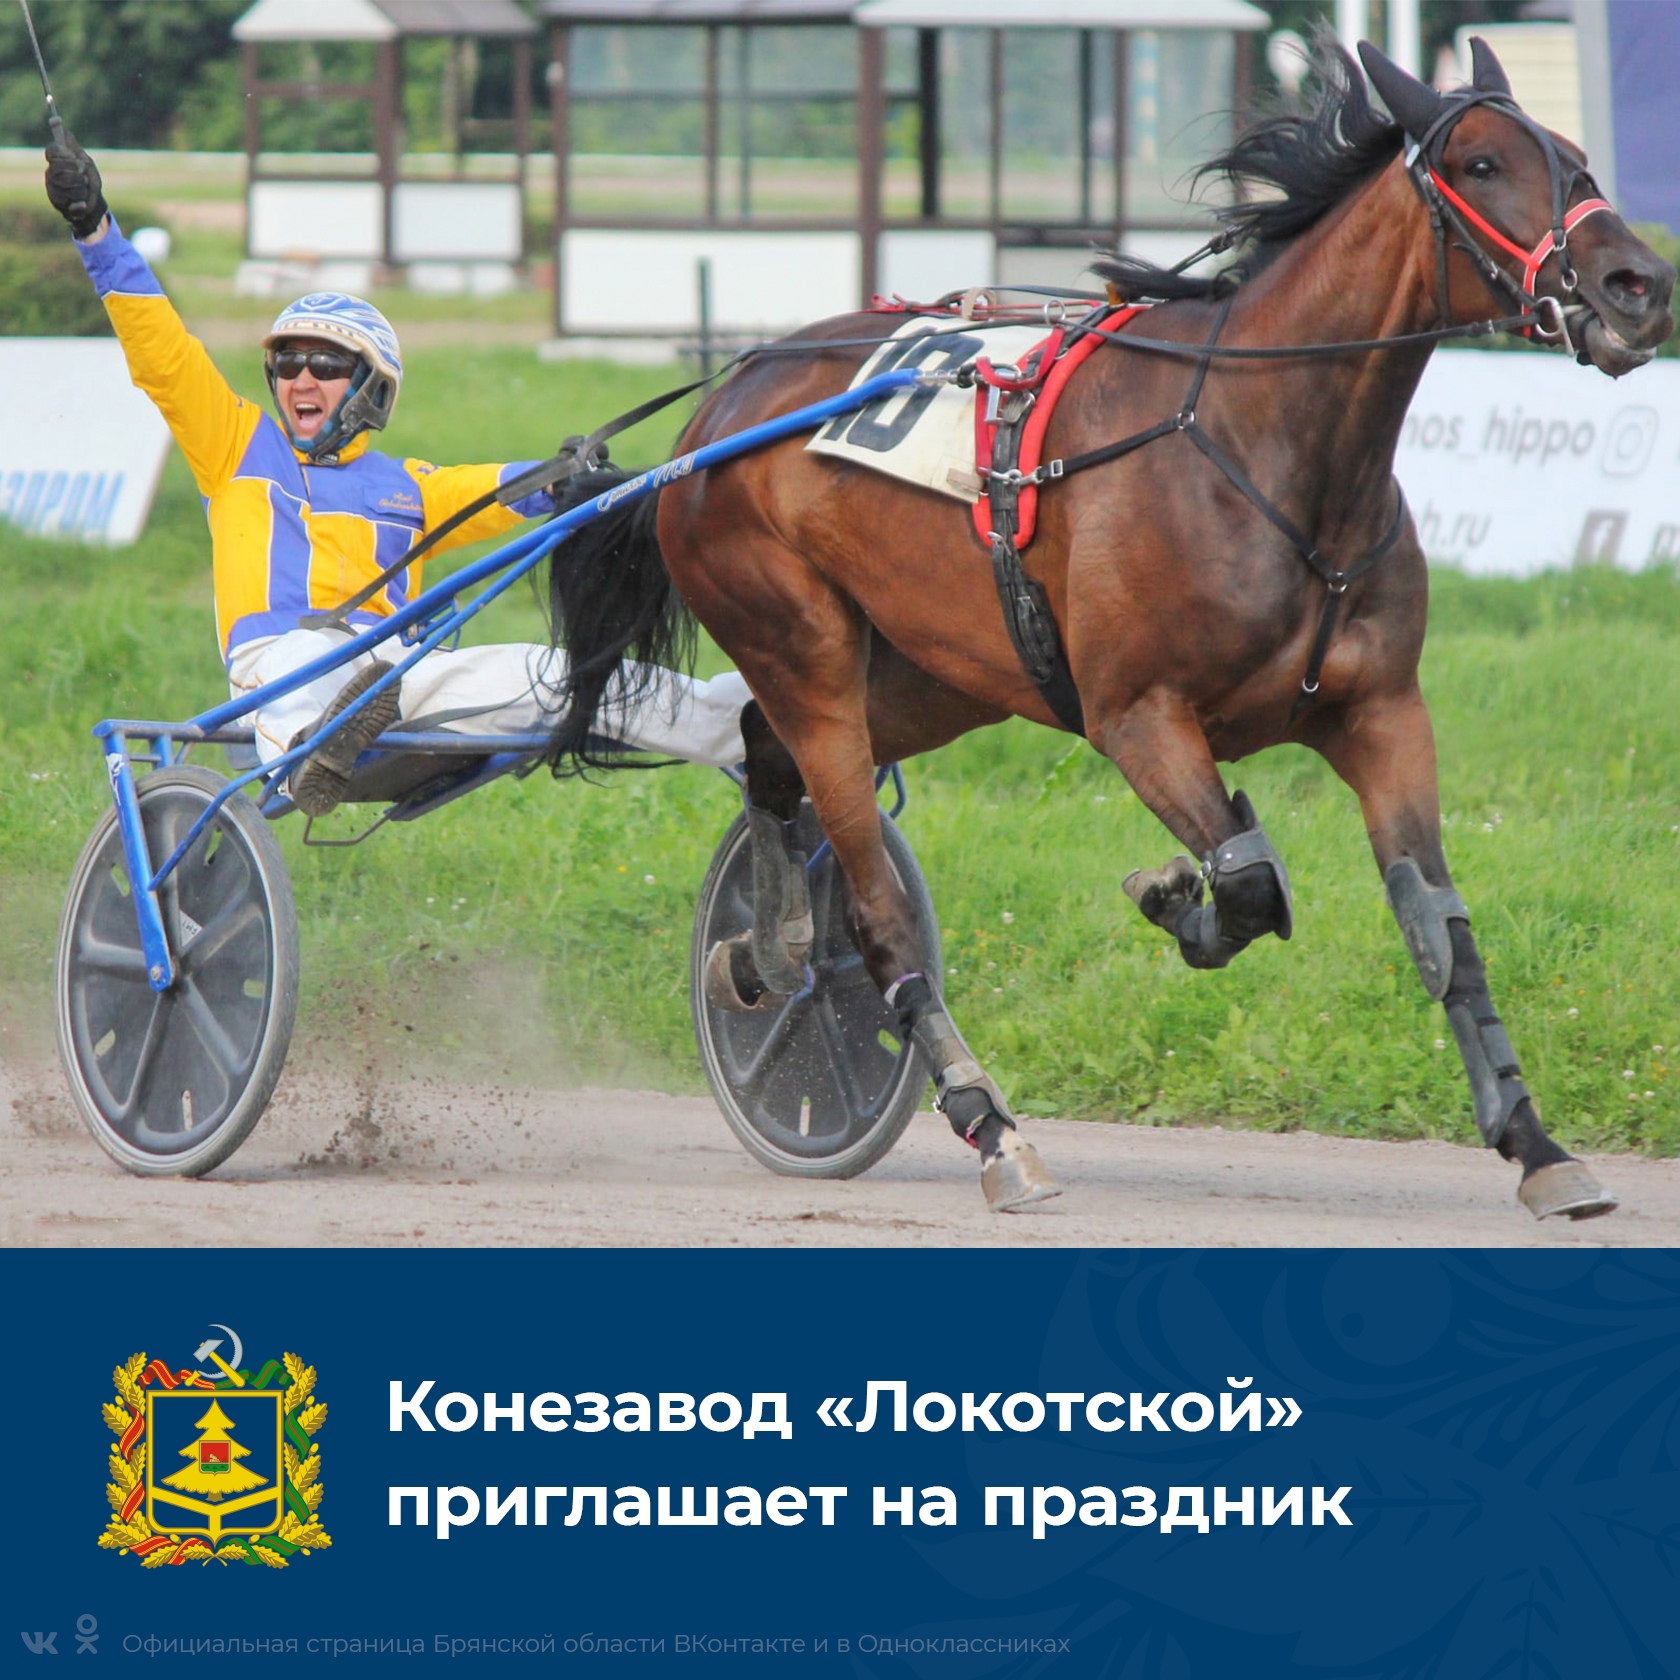 Праздник, посвященный 125-летию Локотского конного завода, состоится 6 сентября